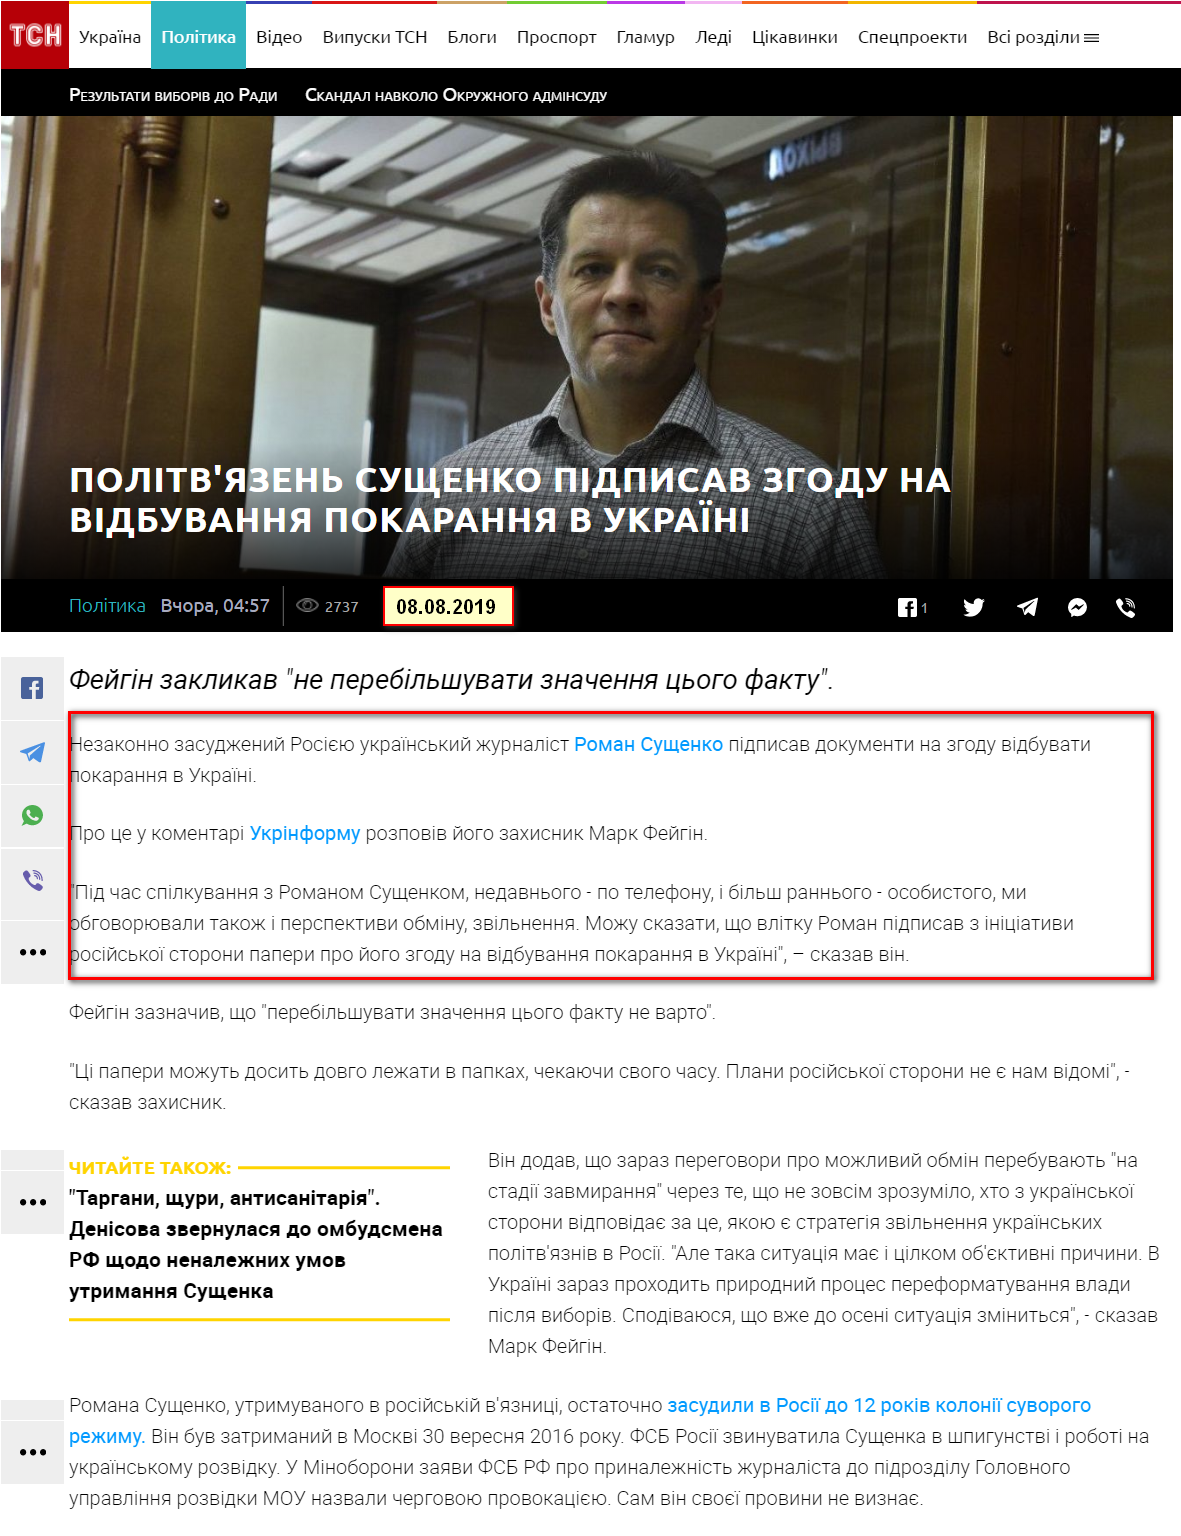 https://tsn.ua/politika/politv-yazen-suschenko-pidpisav-zgodu-na-vidbuvannya-pokarannya-v-ukrayina-1391304.html